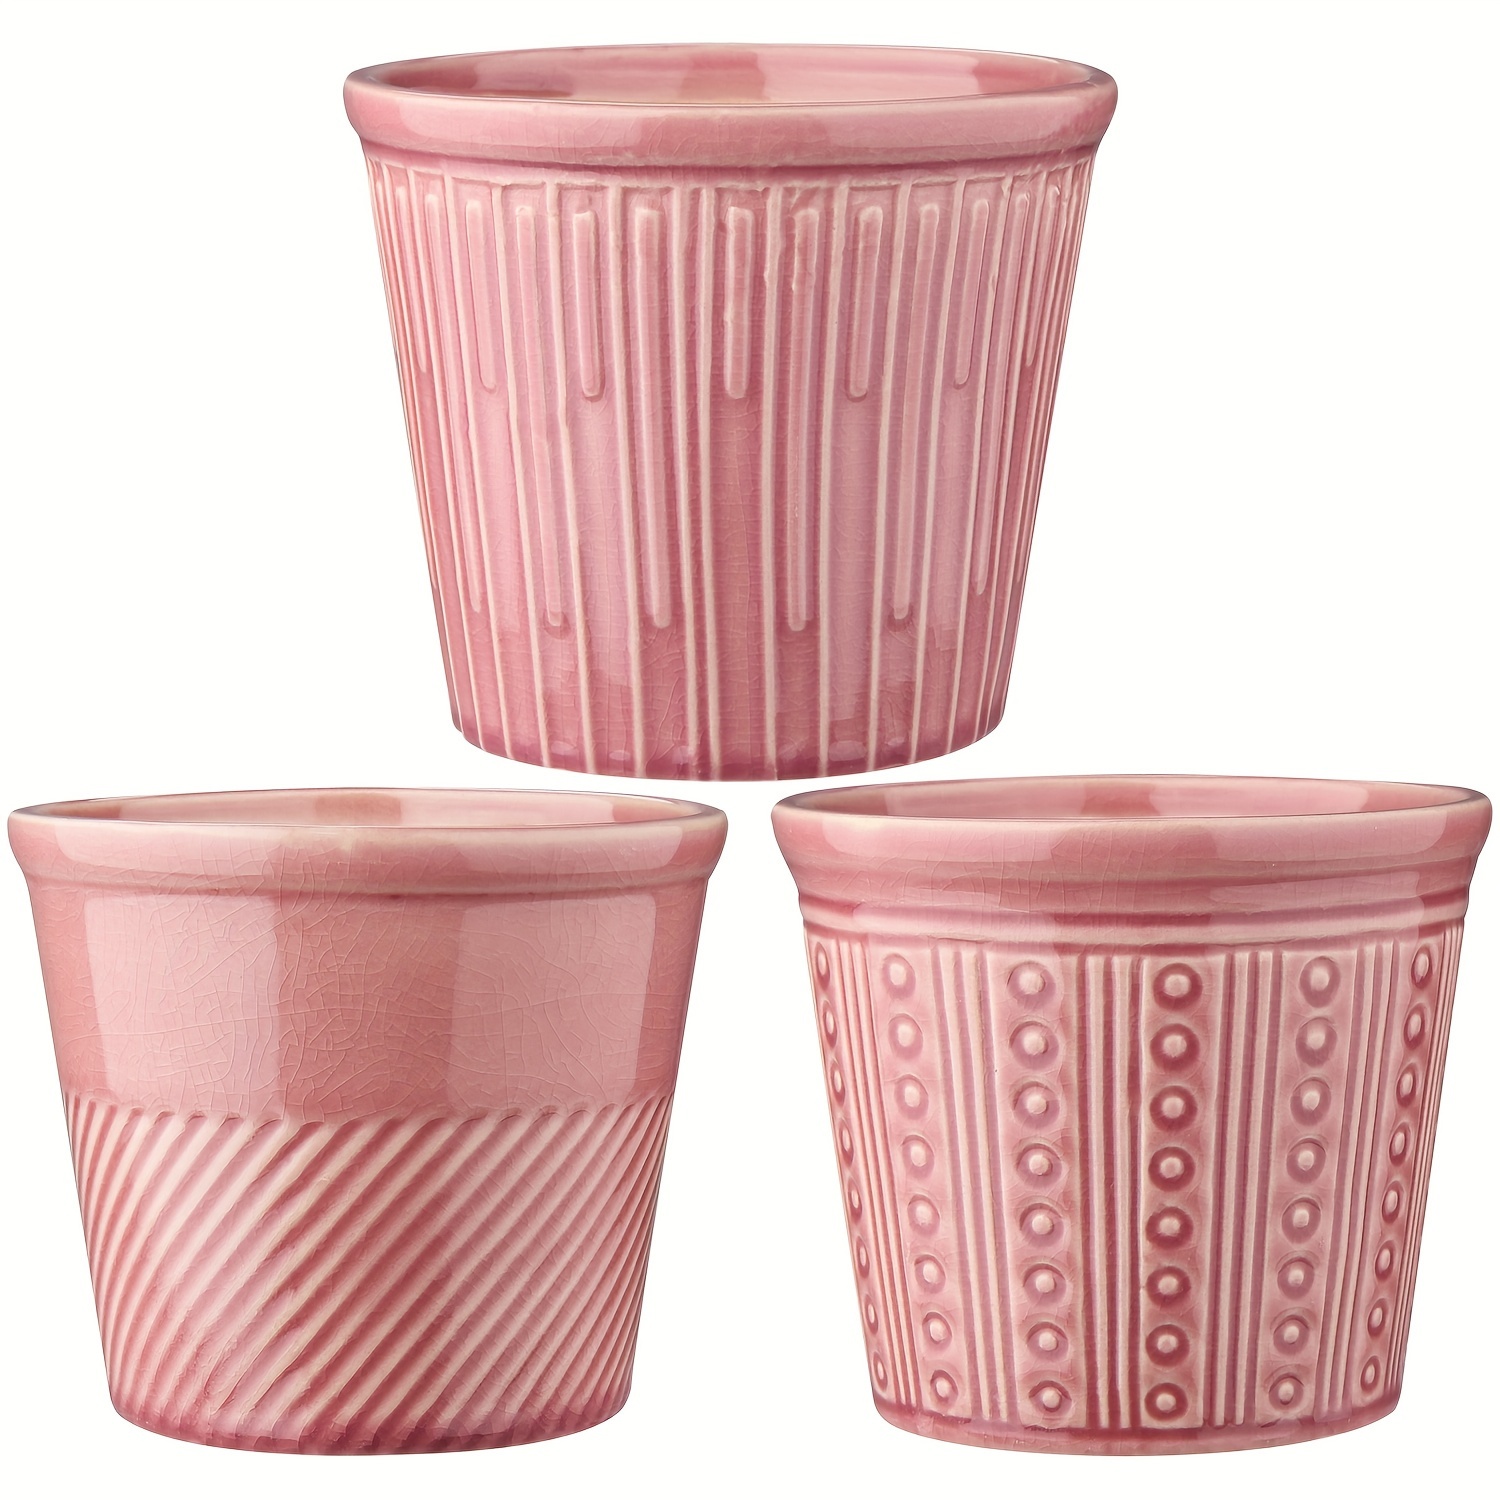 Macetero artesanal de cerámica rosa con diseño de tres patas